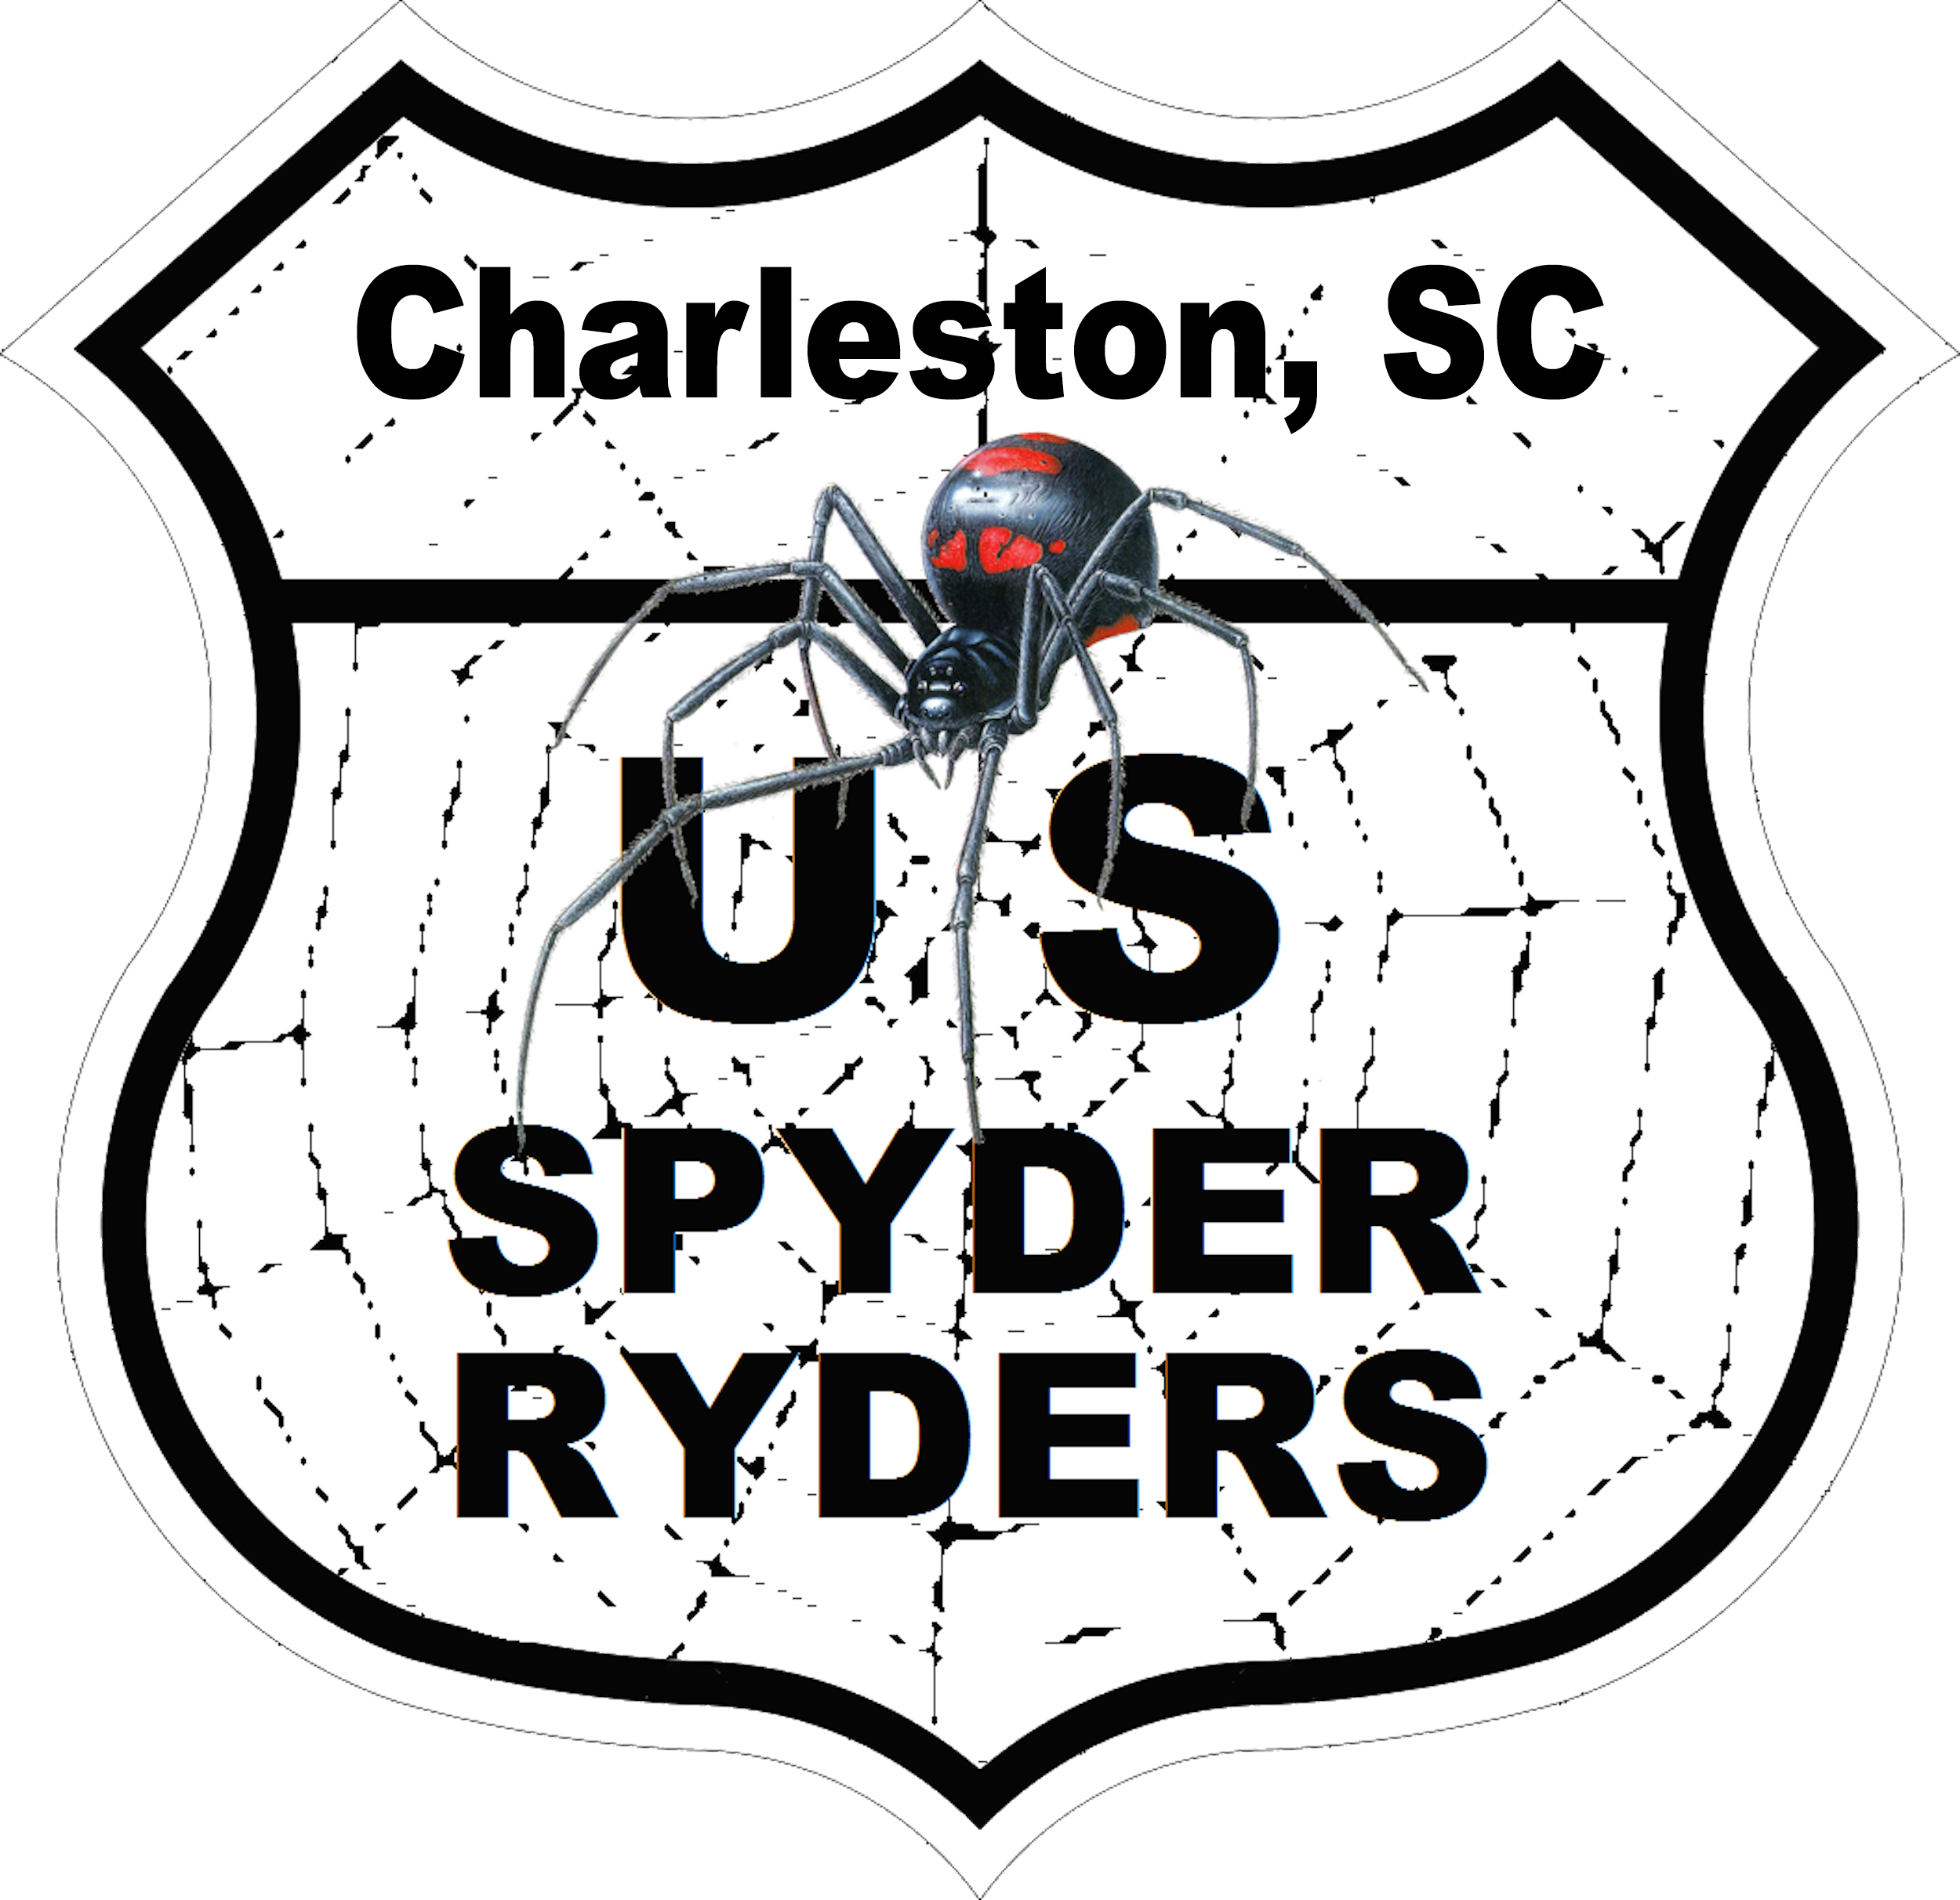 US_Spyder_Ryder_SC_Charleston_SC.png